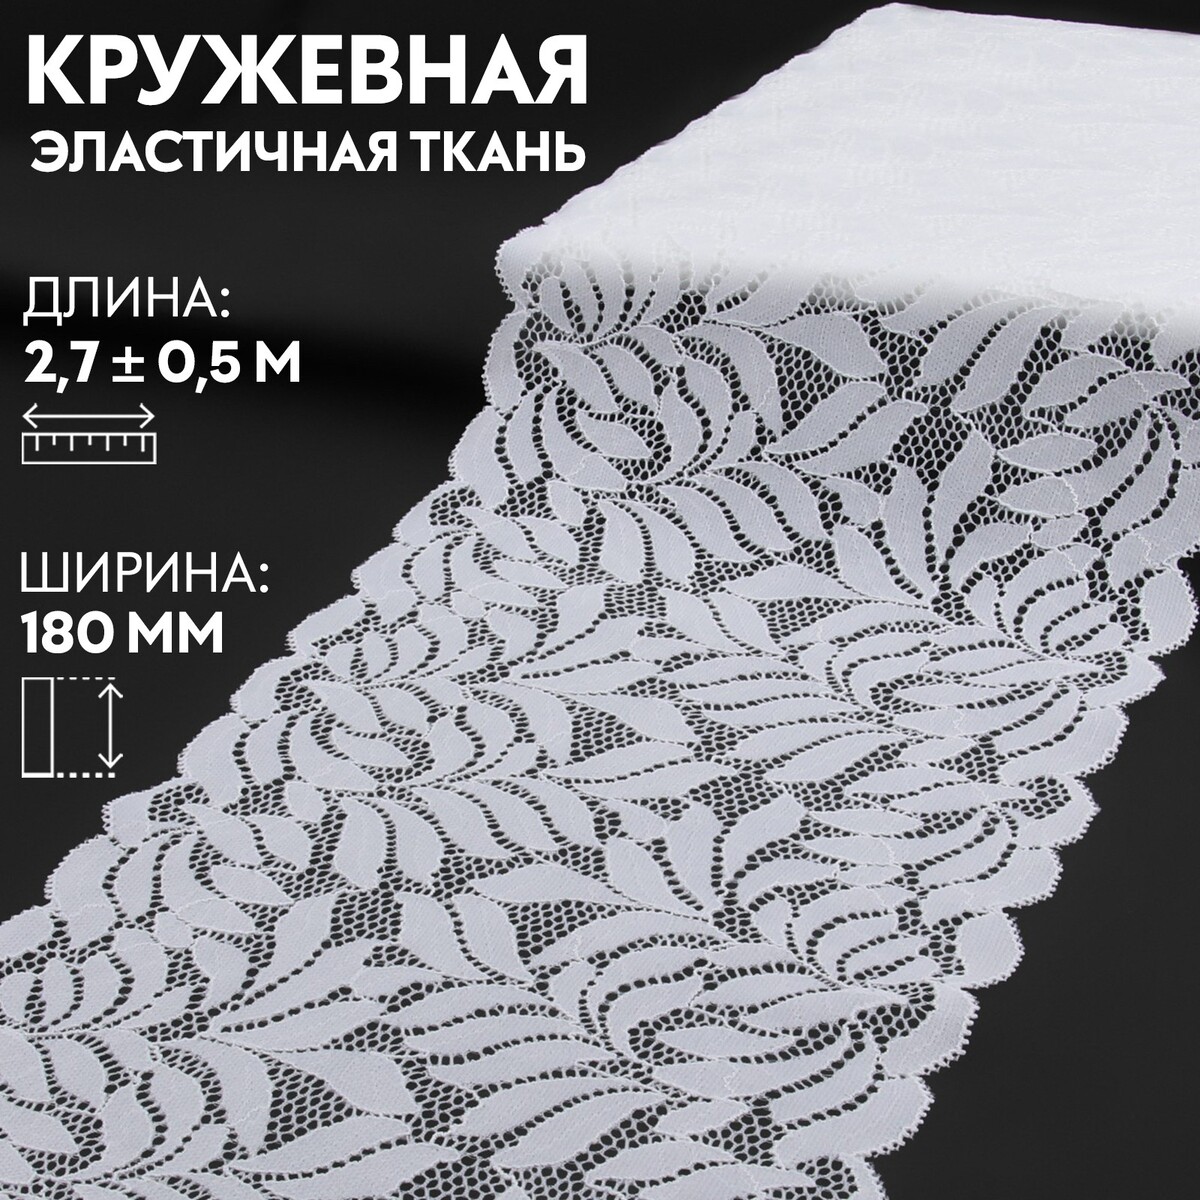 Кружевная эластичная ткань, 180 мм × 2,7 ± 0,5 м, цвет белый кружевная эластичная ткань 190 мм × 2 7 ± 0 5 м молочный